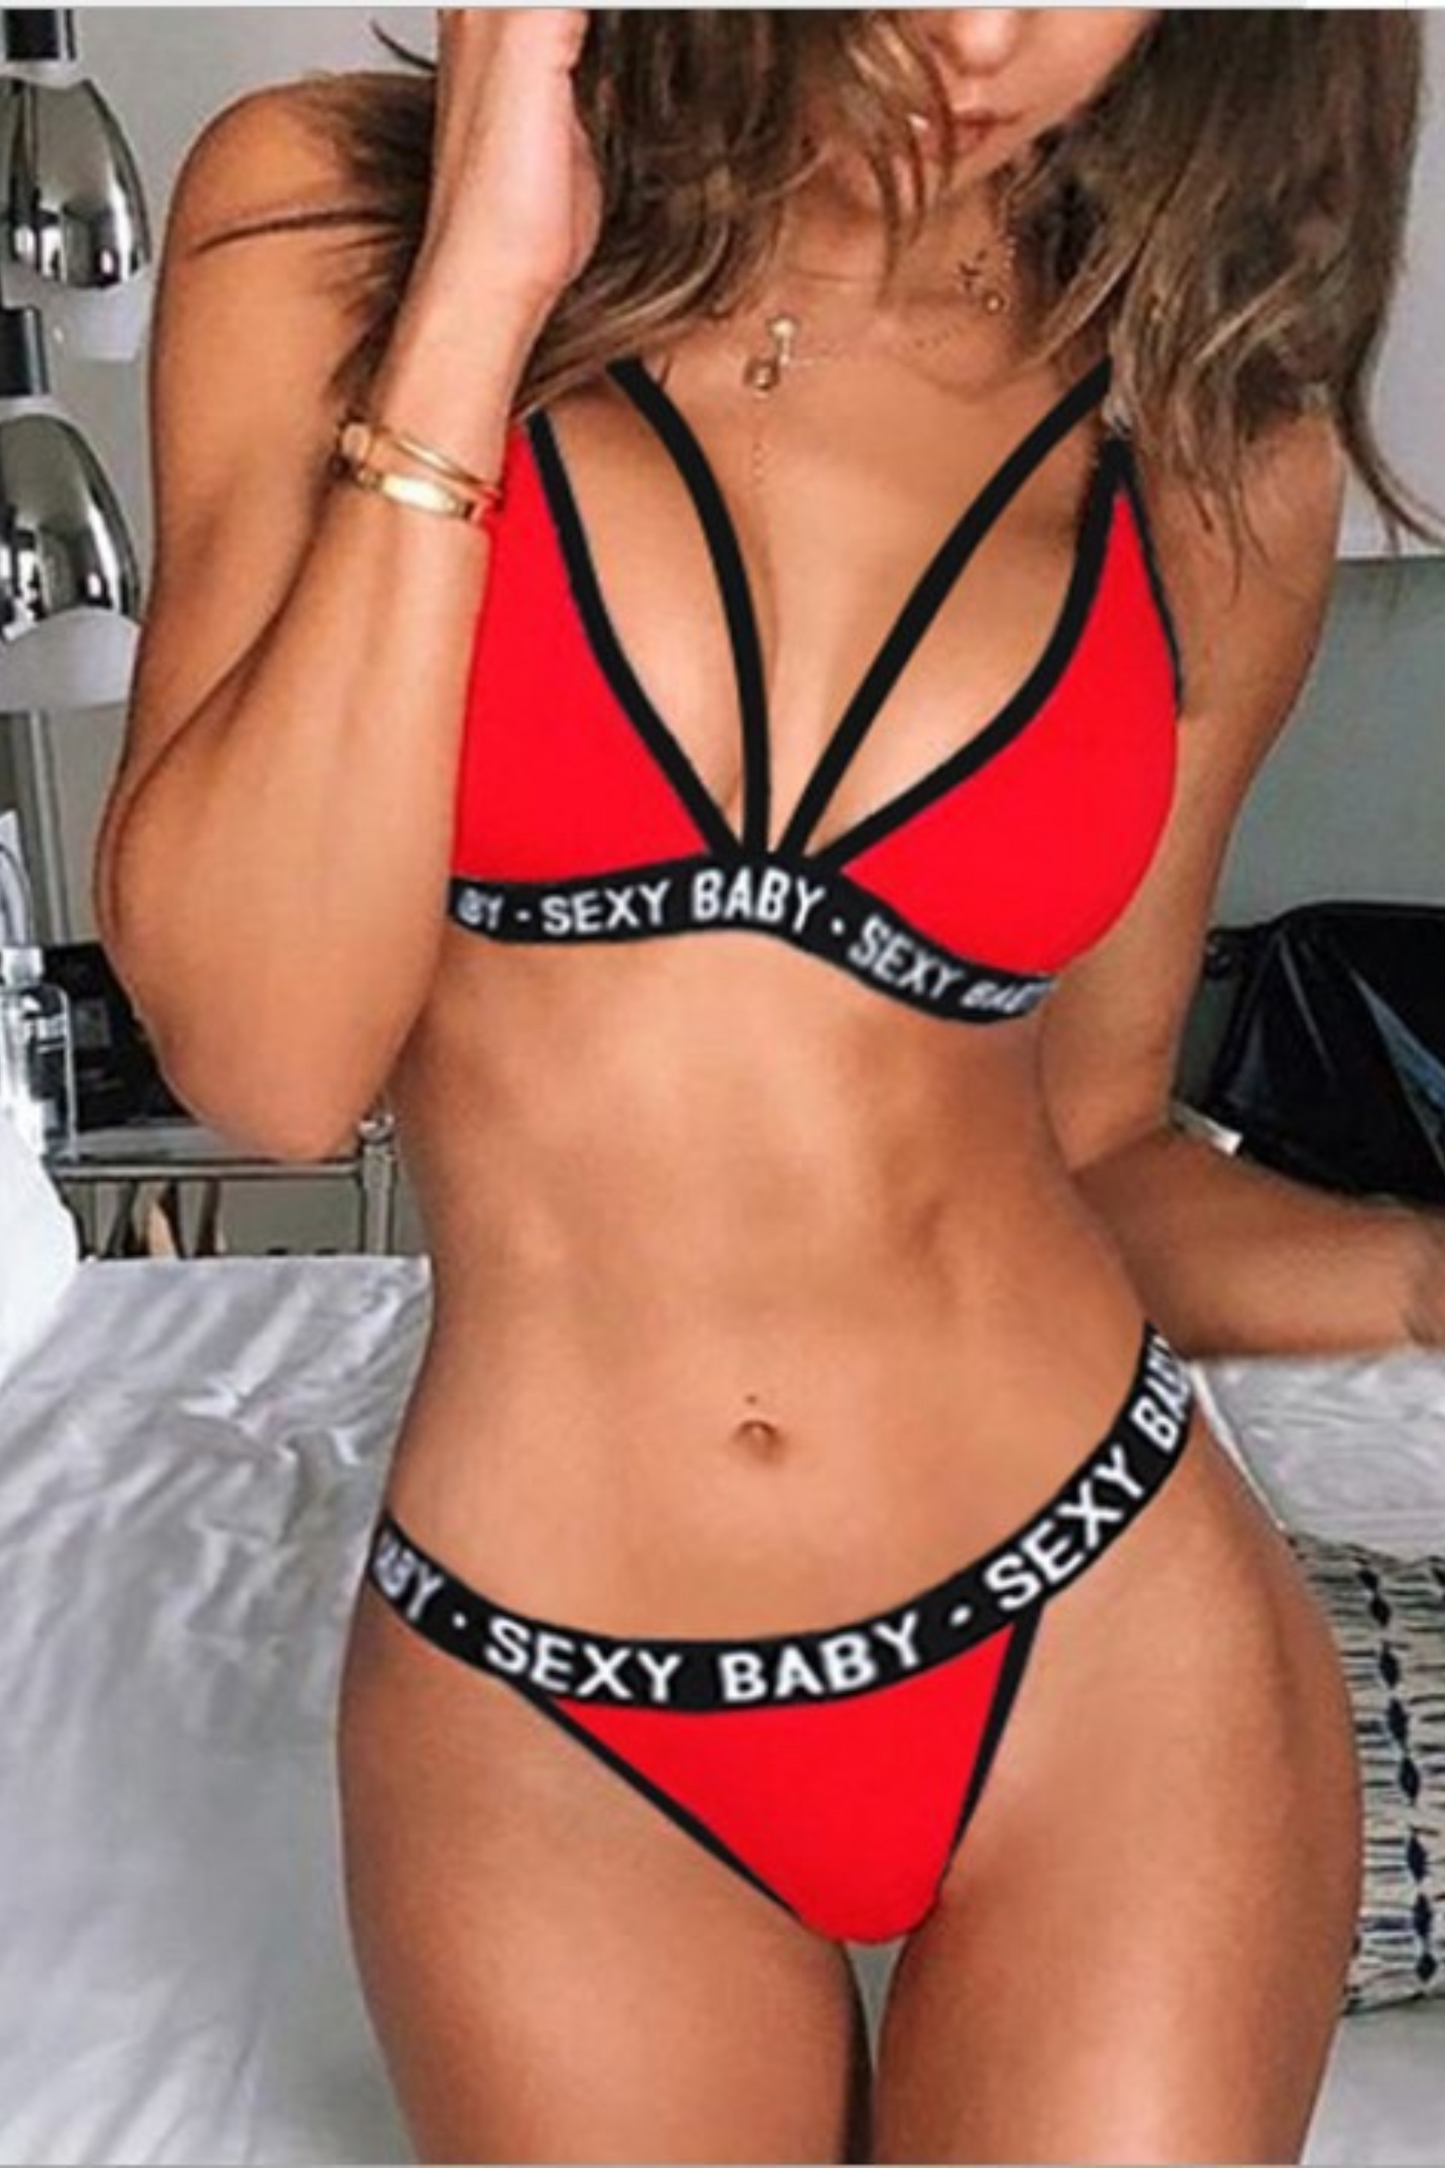 Sexy Babe Underwear & Bra Set - Red